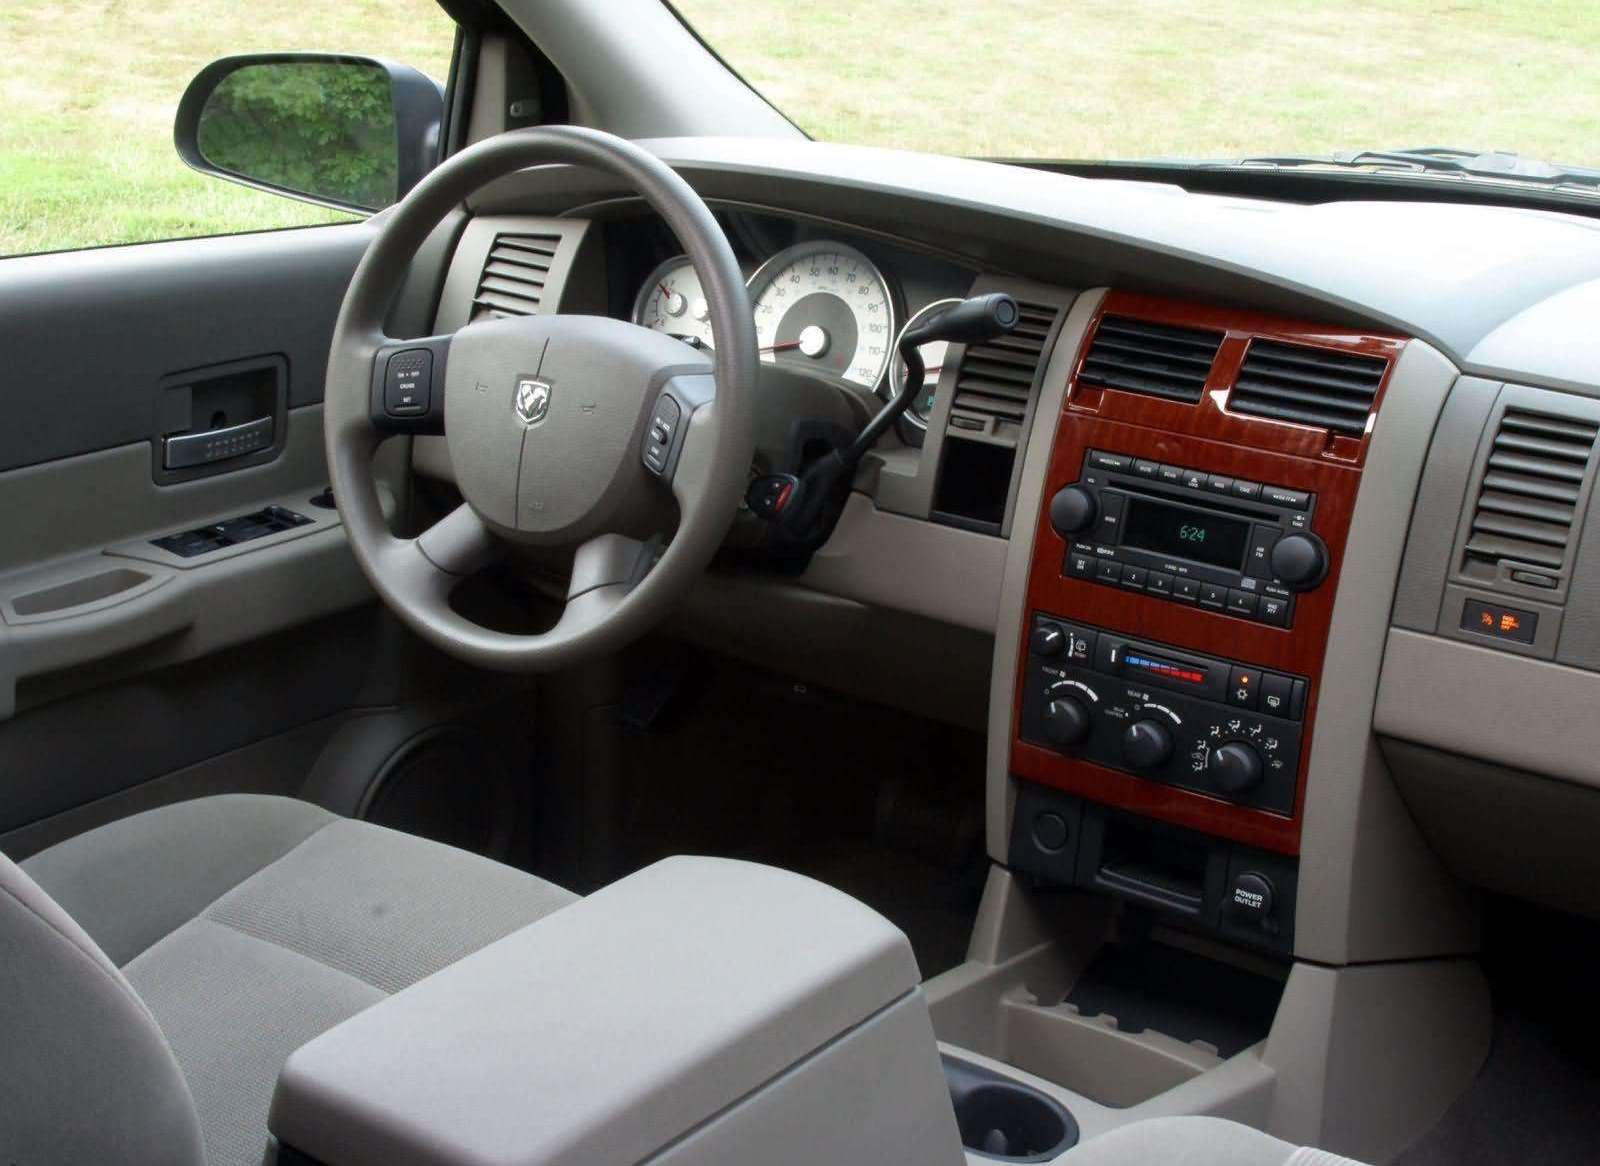 2009 Dodge Durango: Review, Trims, Specs, Price, New Interior Features